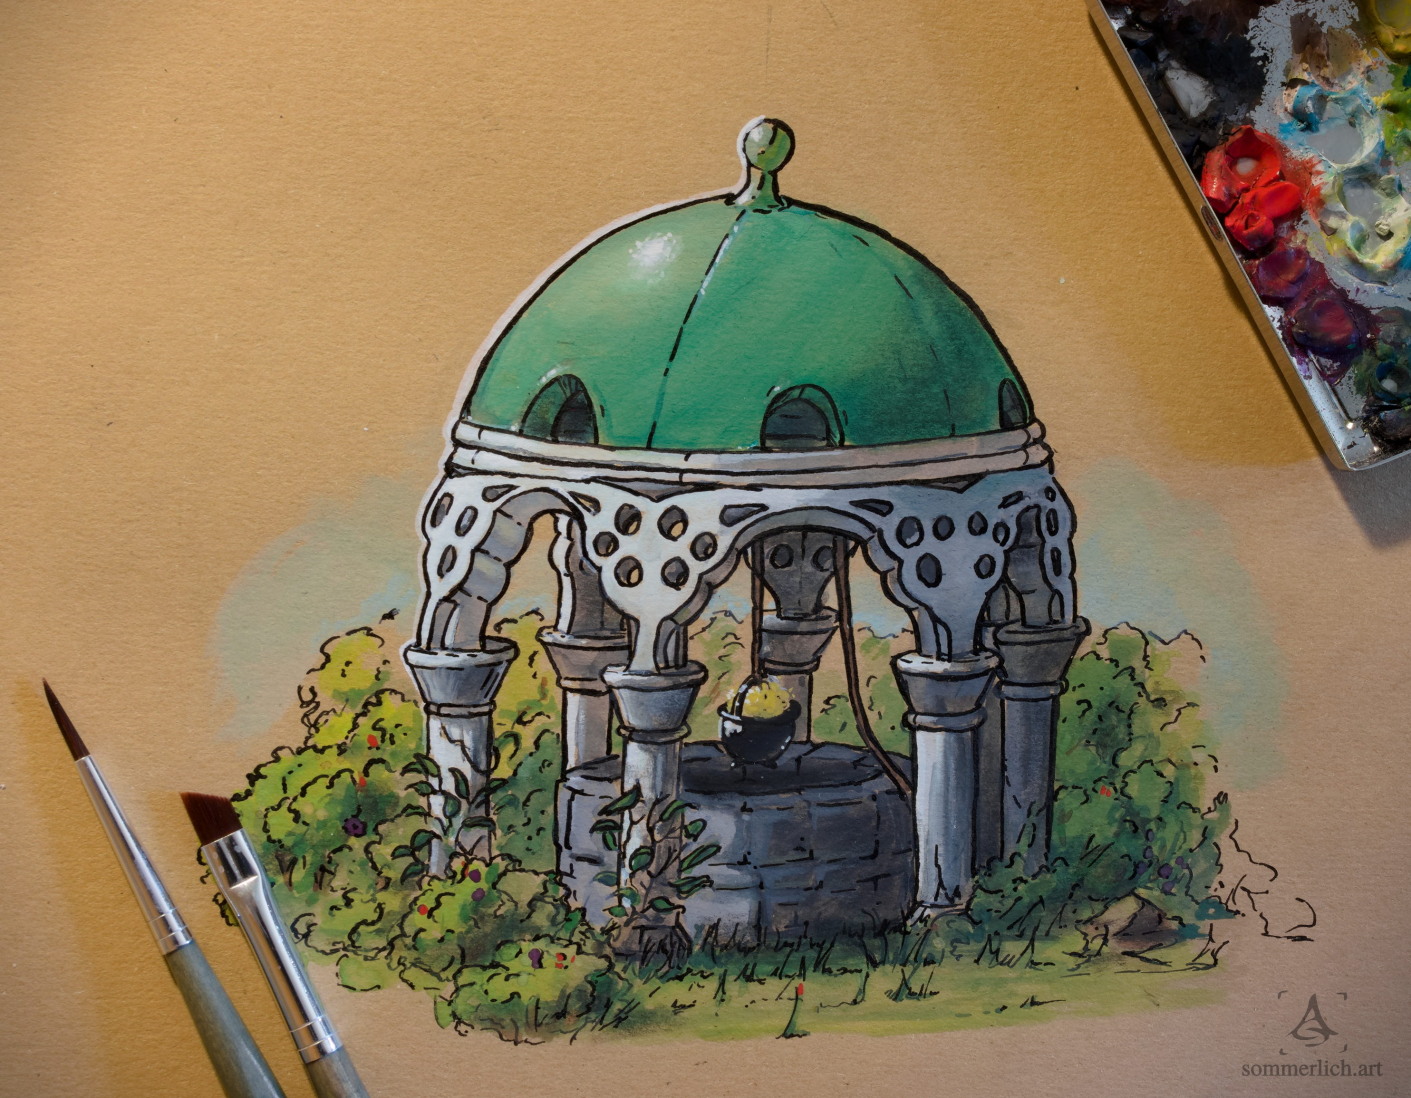 Handgefertigte Illustration eines Brunnens unter einem Pavilion mit grünem Dach. A handmade illustration of a well which is covered by a pavilion with green roof.